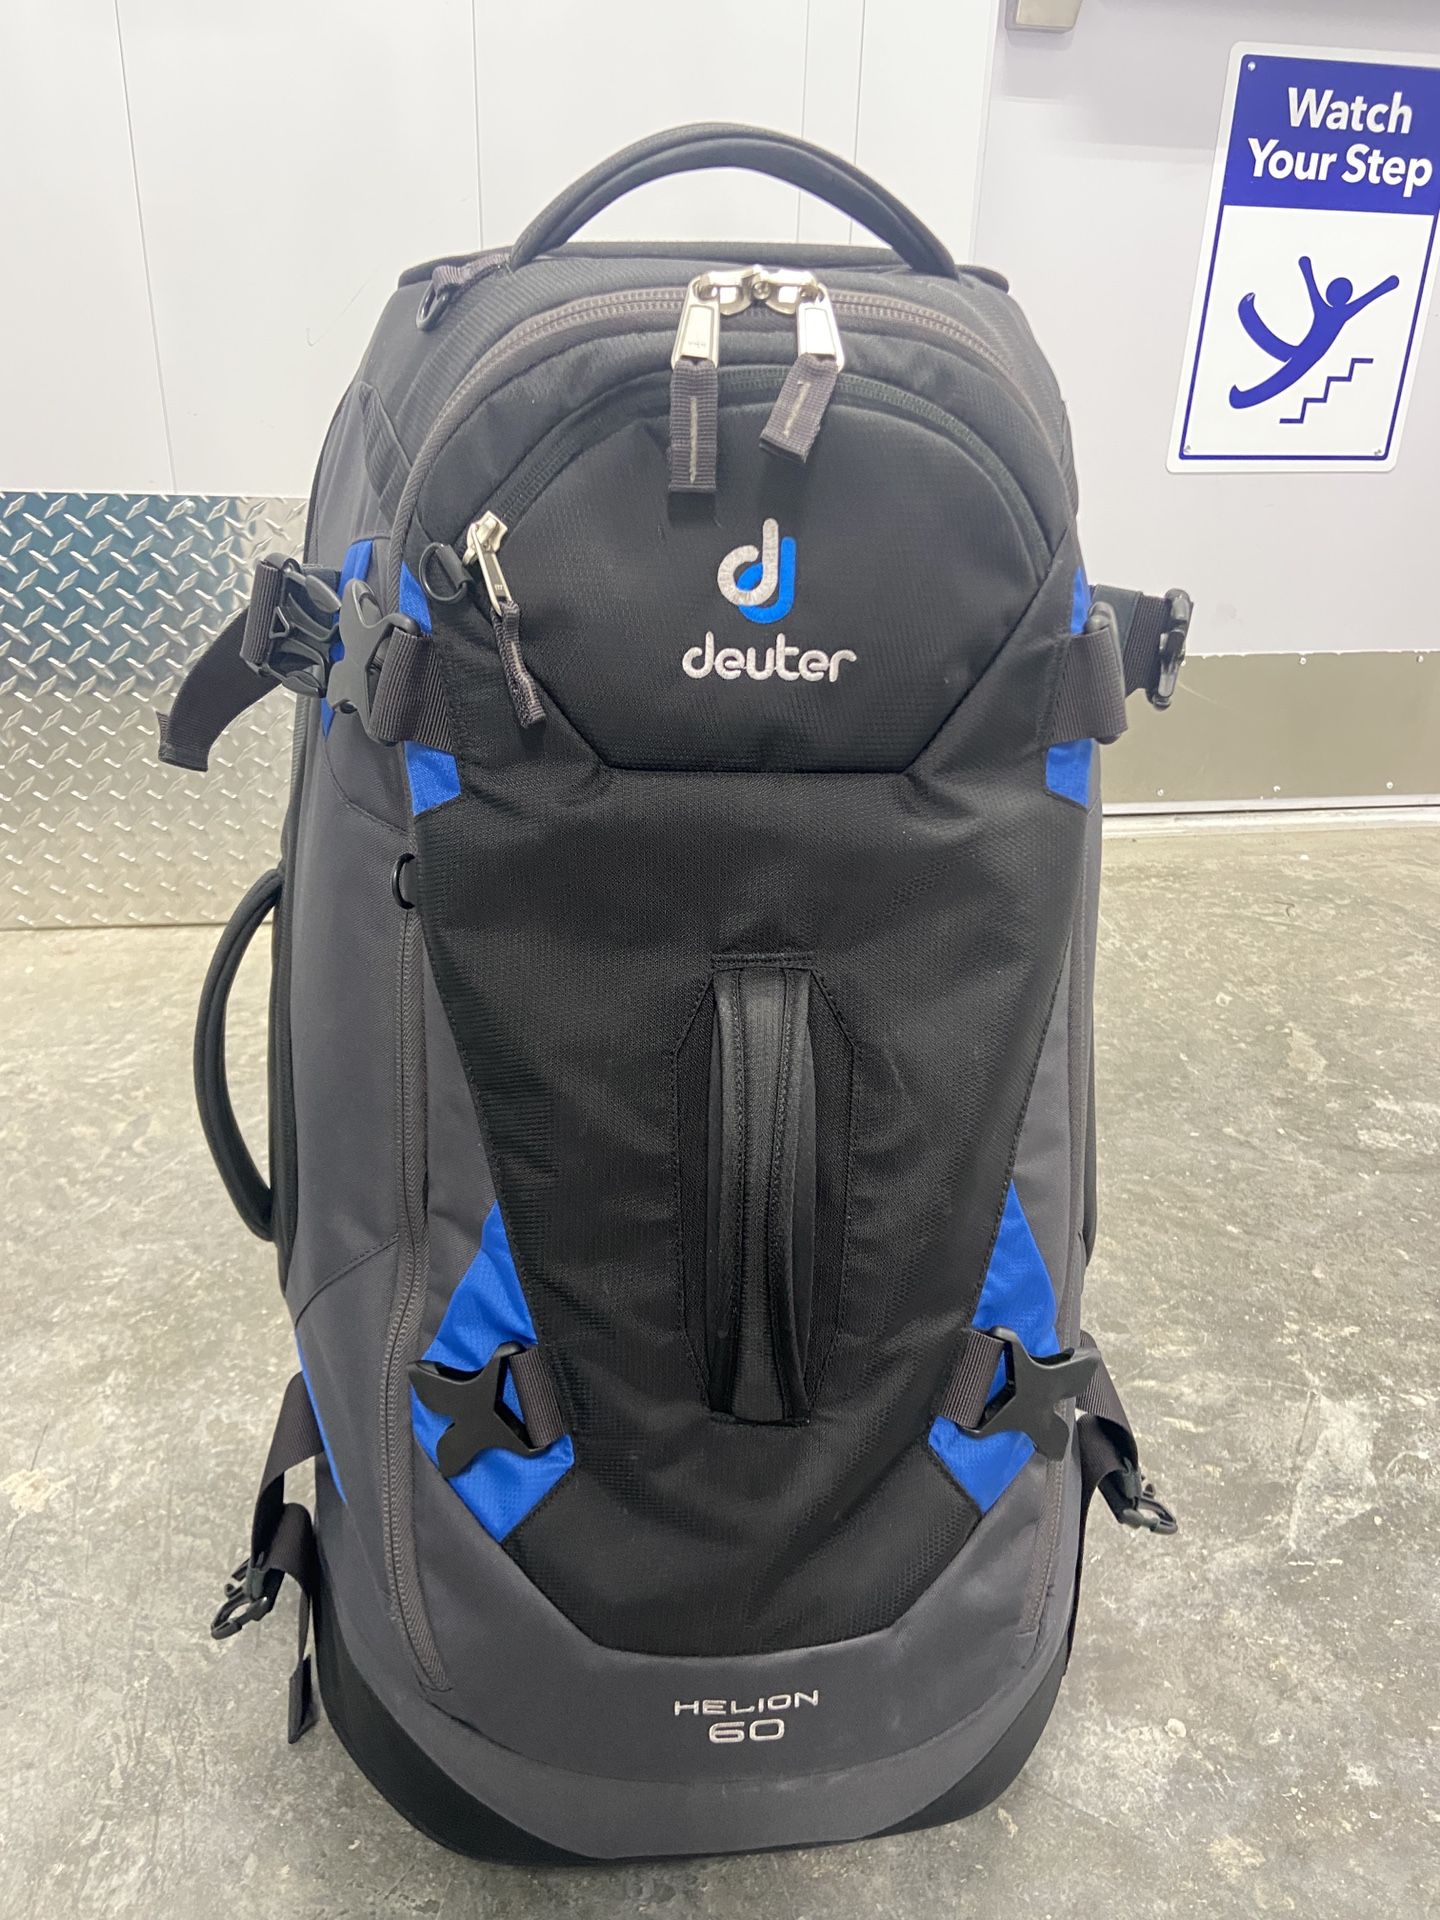 Deuter Helion 60 Wheeled Backpack Luggage 